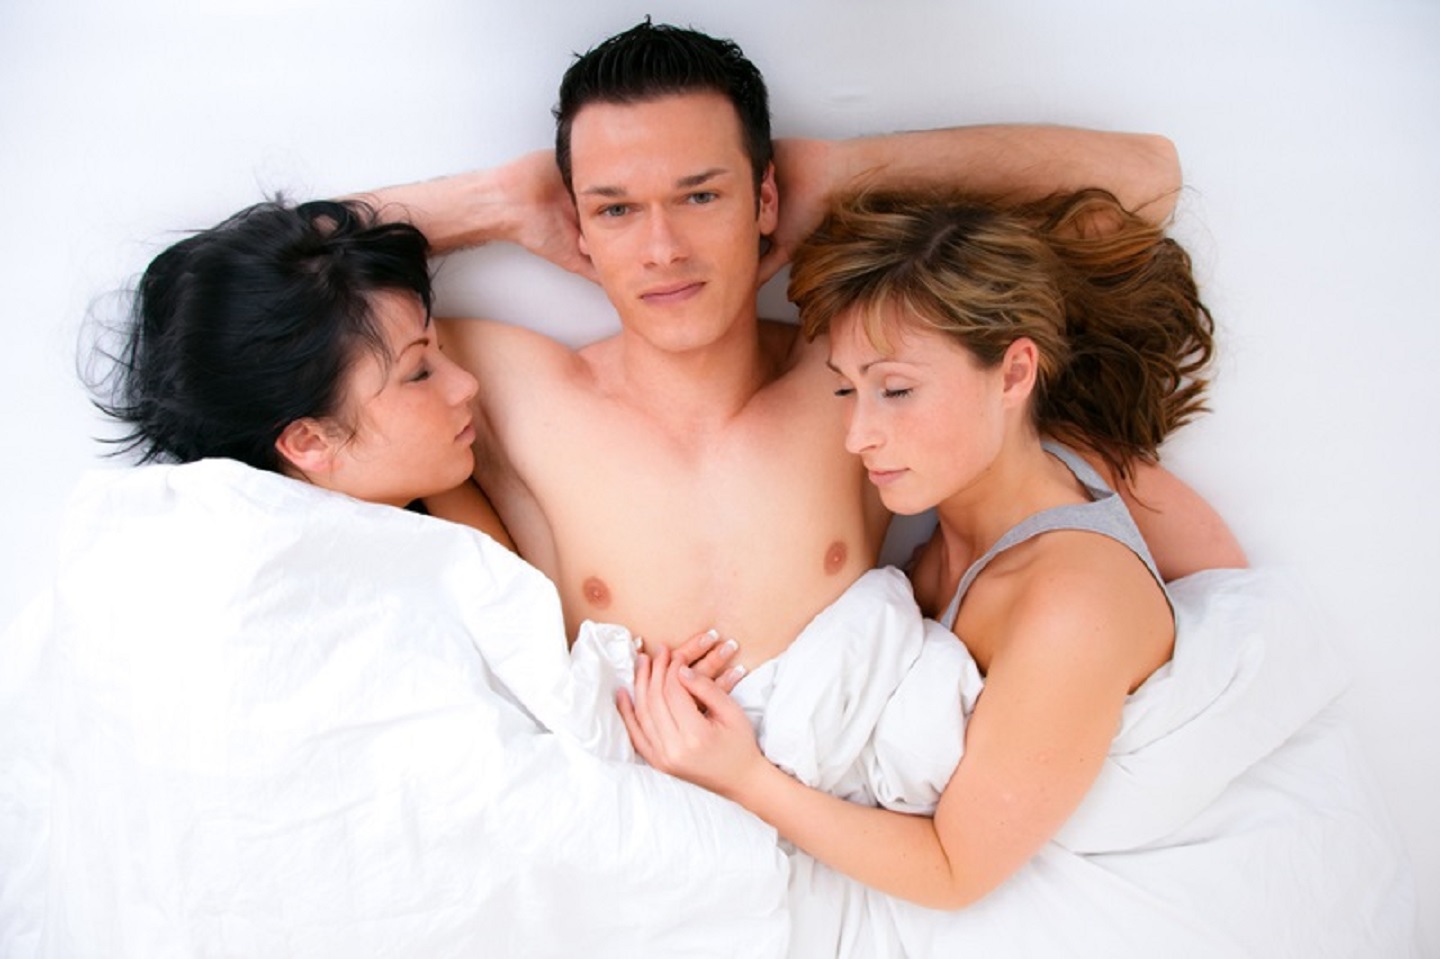 Мама и молодая девка решили замутить групповуху с двумя мужиками на одной кровати